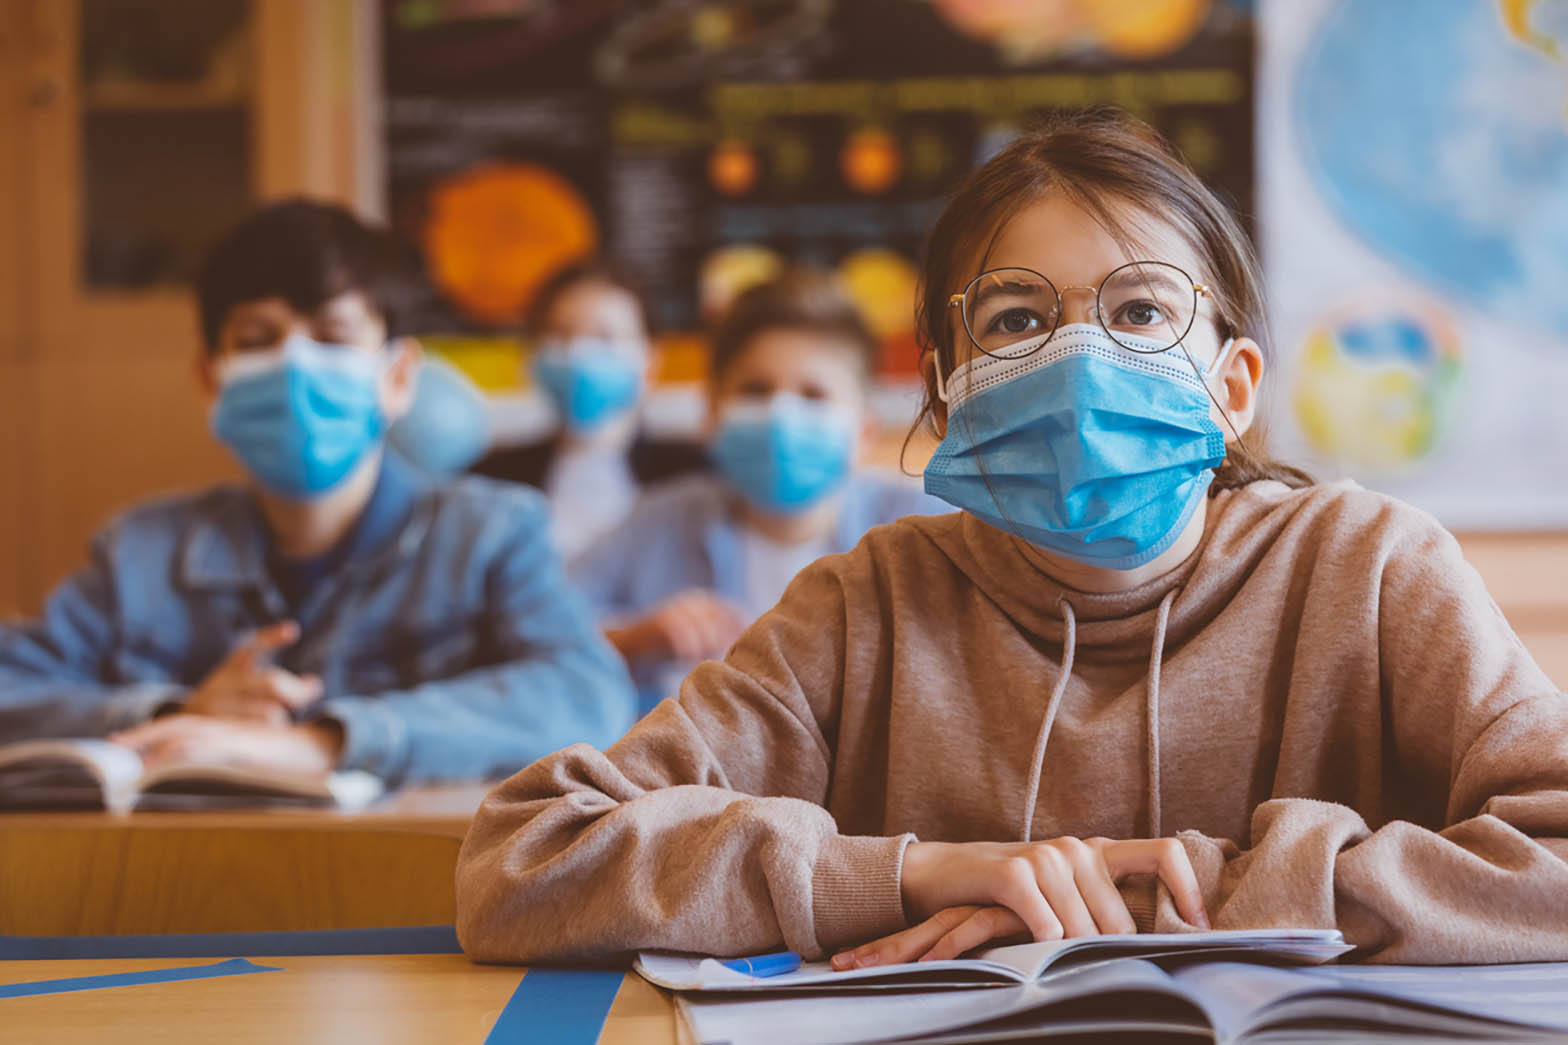 Mädchen mit Mund-Nasen-Schutz sitzt im Unterricht im Klassenzimmer